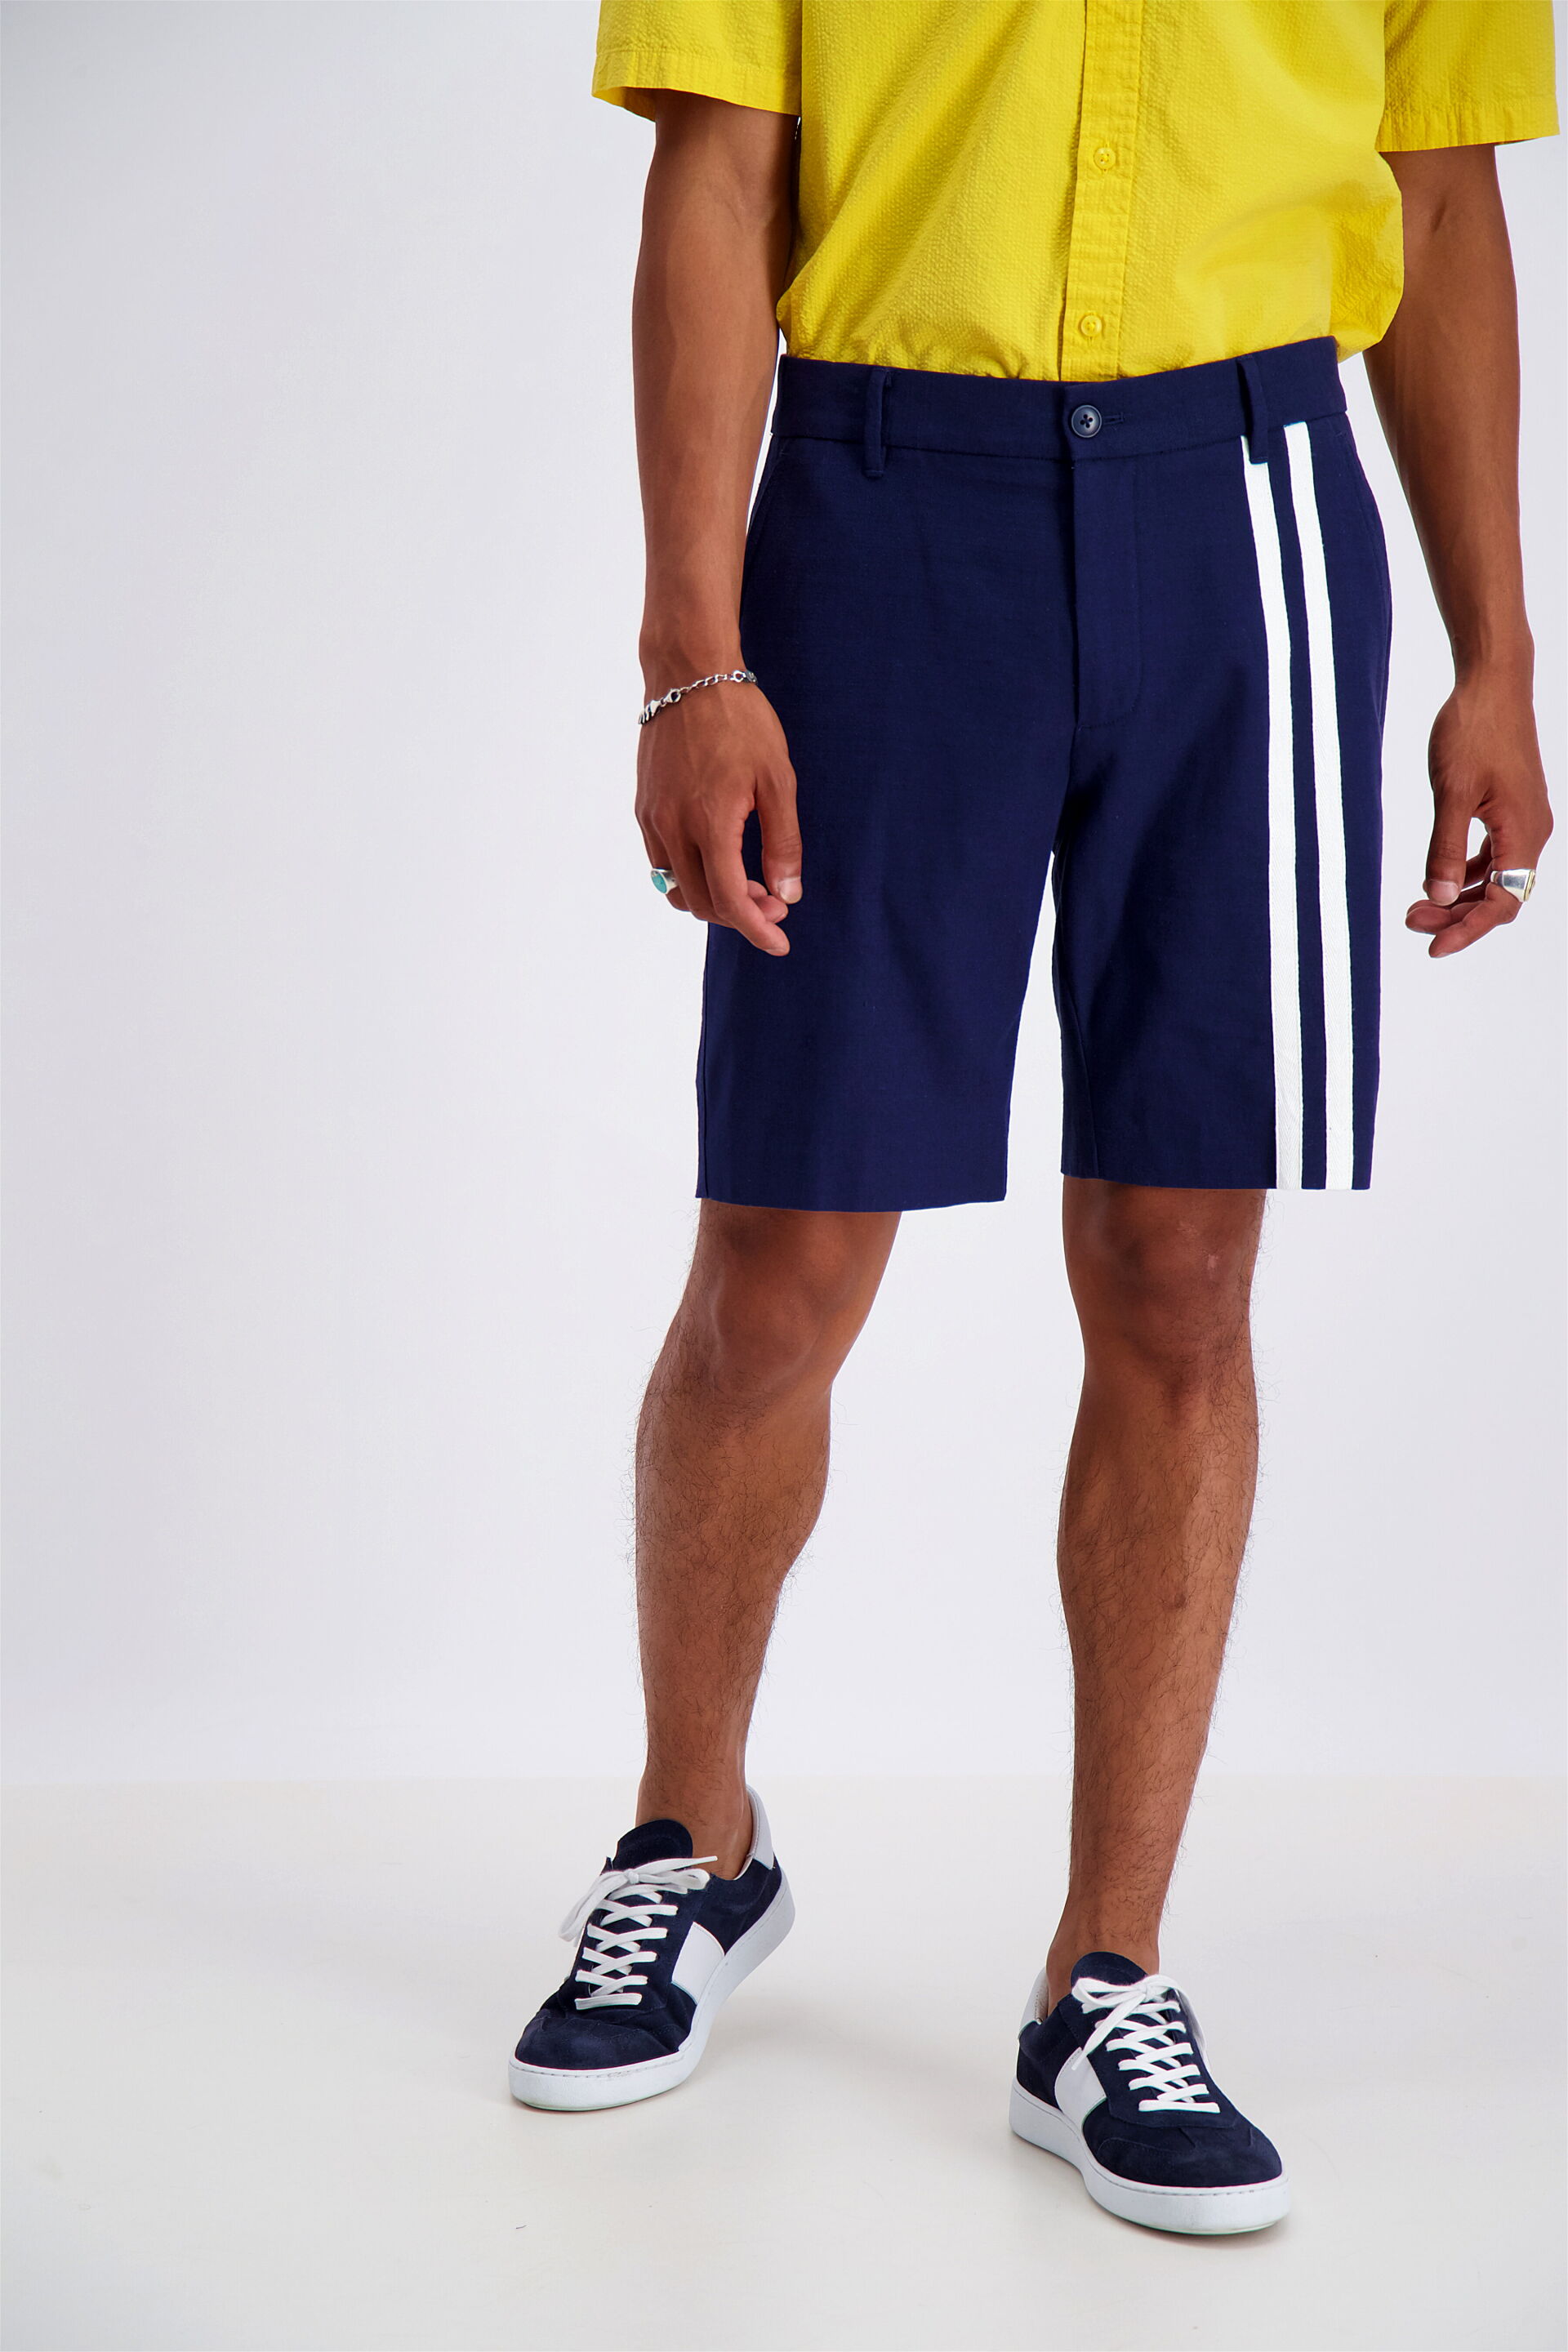 Junk de Luxe  Chino shorts 60-552004